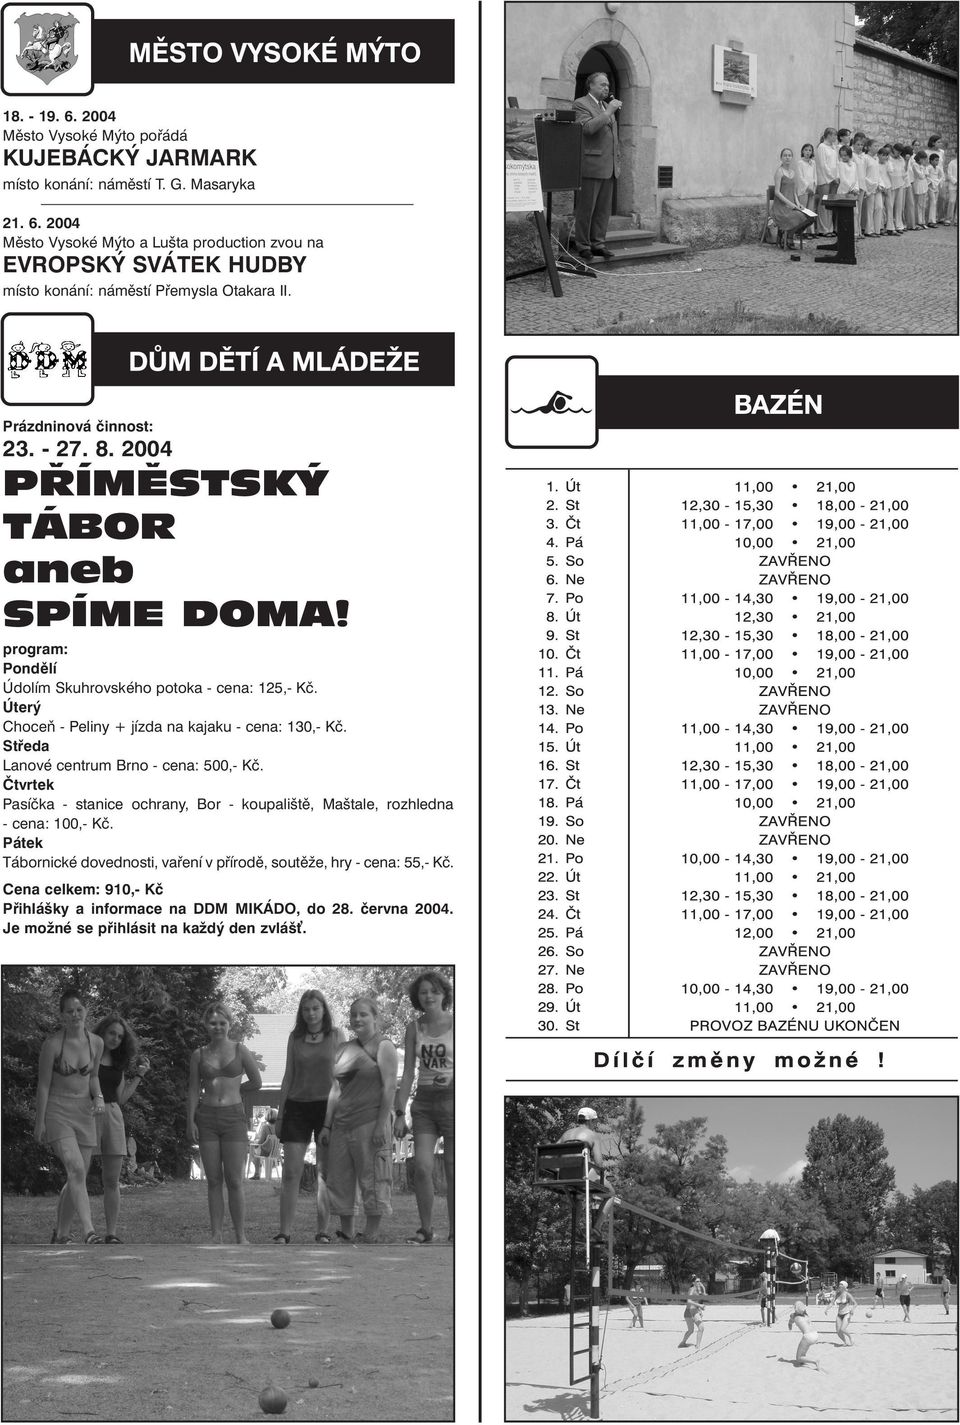 Úterý Choceň - Peliny + jízda na kajaku - cena: 130,- Kč. Středa Lanové centrum Brno - cena: 500,- Kč.